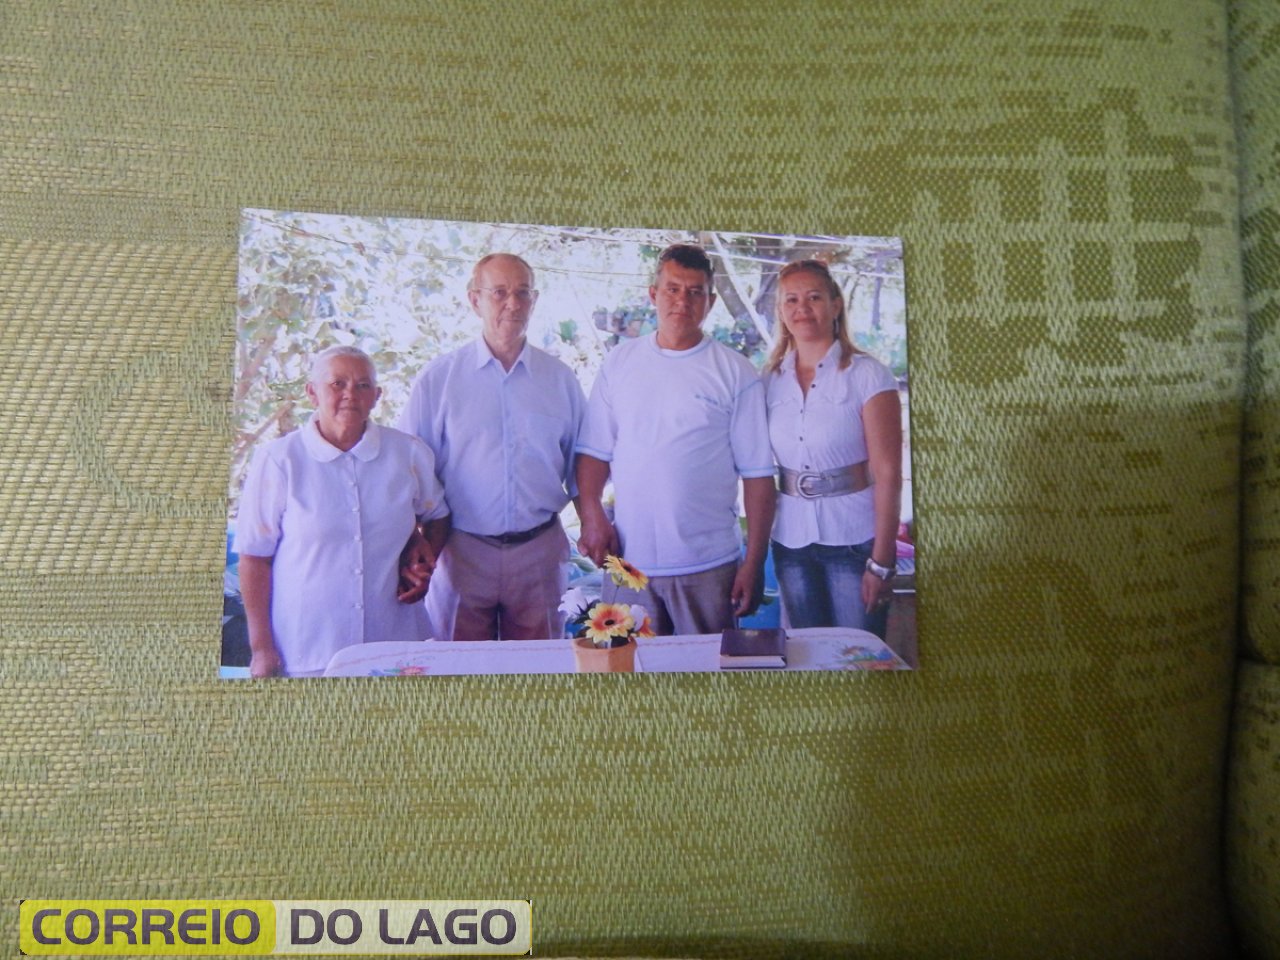 Ana Rosa Galvão, Marcelino José Galvão, Dorival Galvão e Fátima Galvão. Década de 2000.